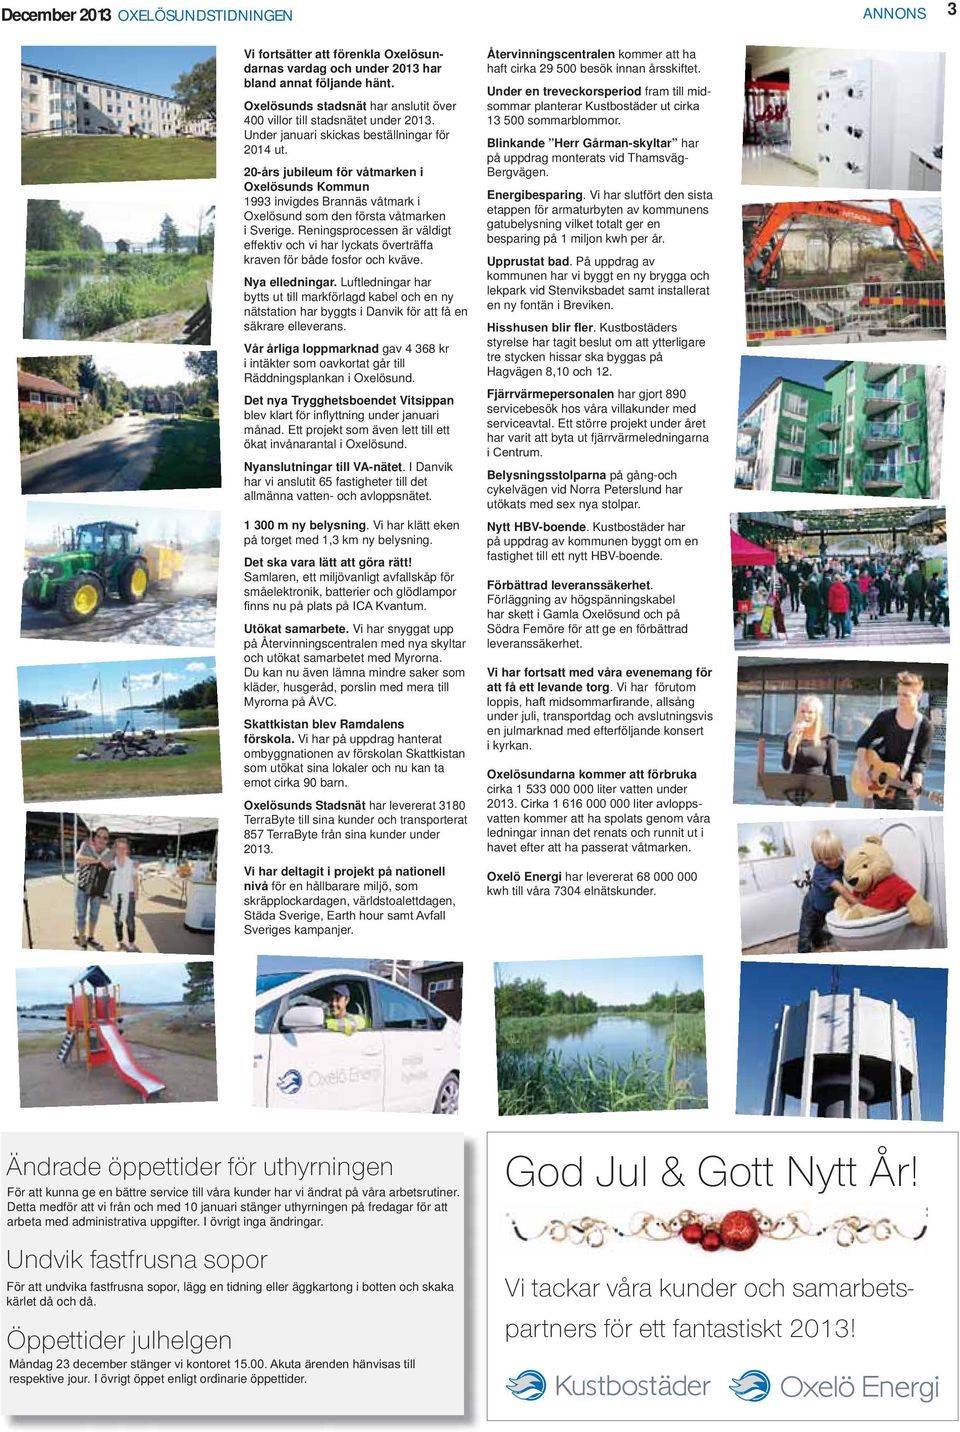 20-års jubileum för våtmarken i Oxelösunds Kommun 1993 invigdes Brannäs våtmark i Oxelösund som den första våtmarken i Sverige.